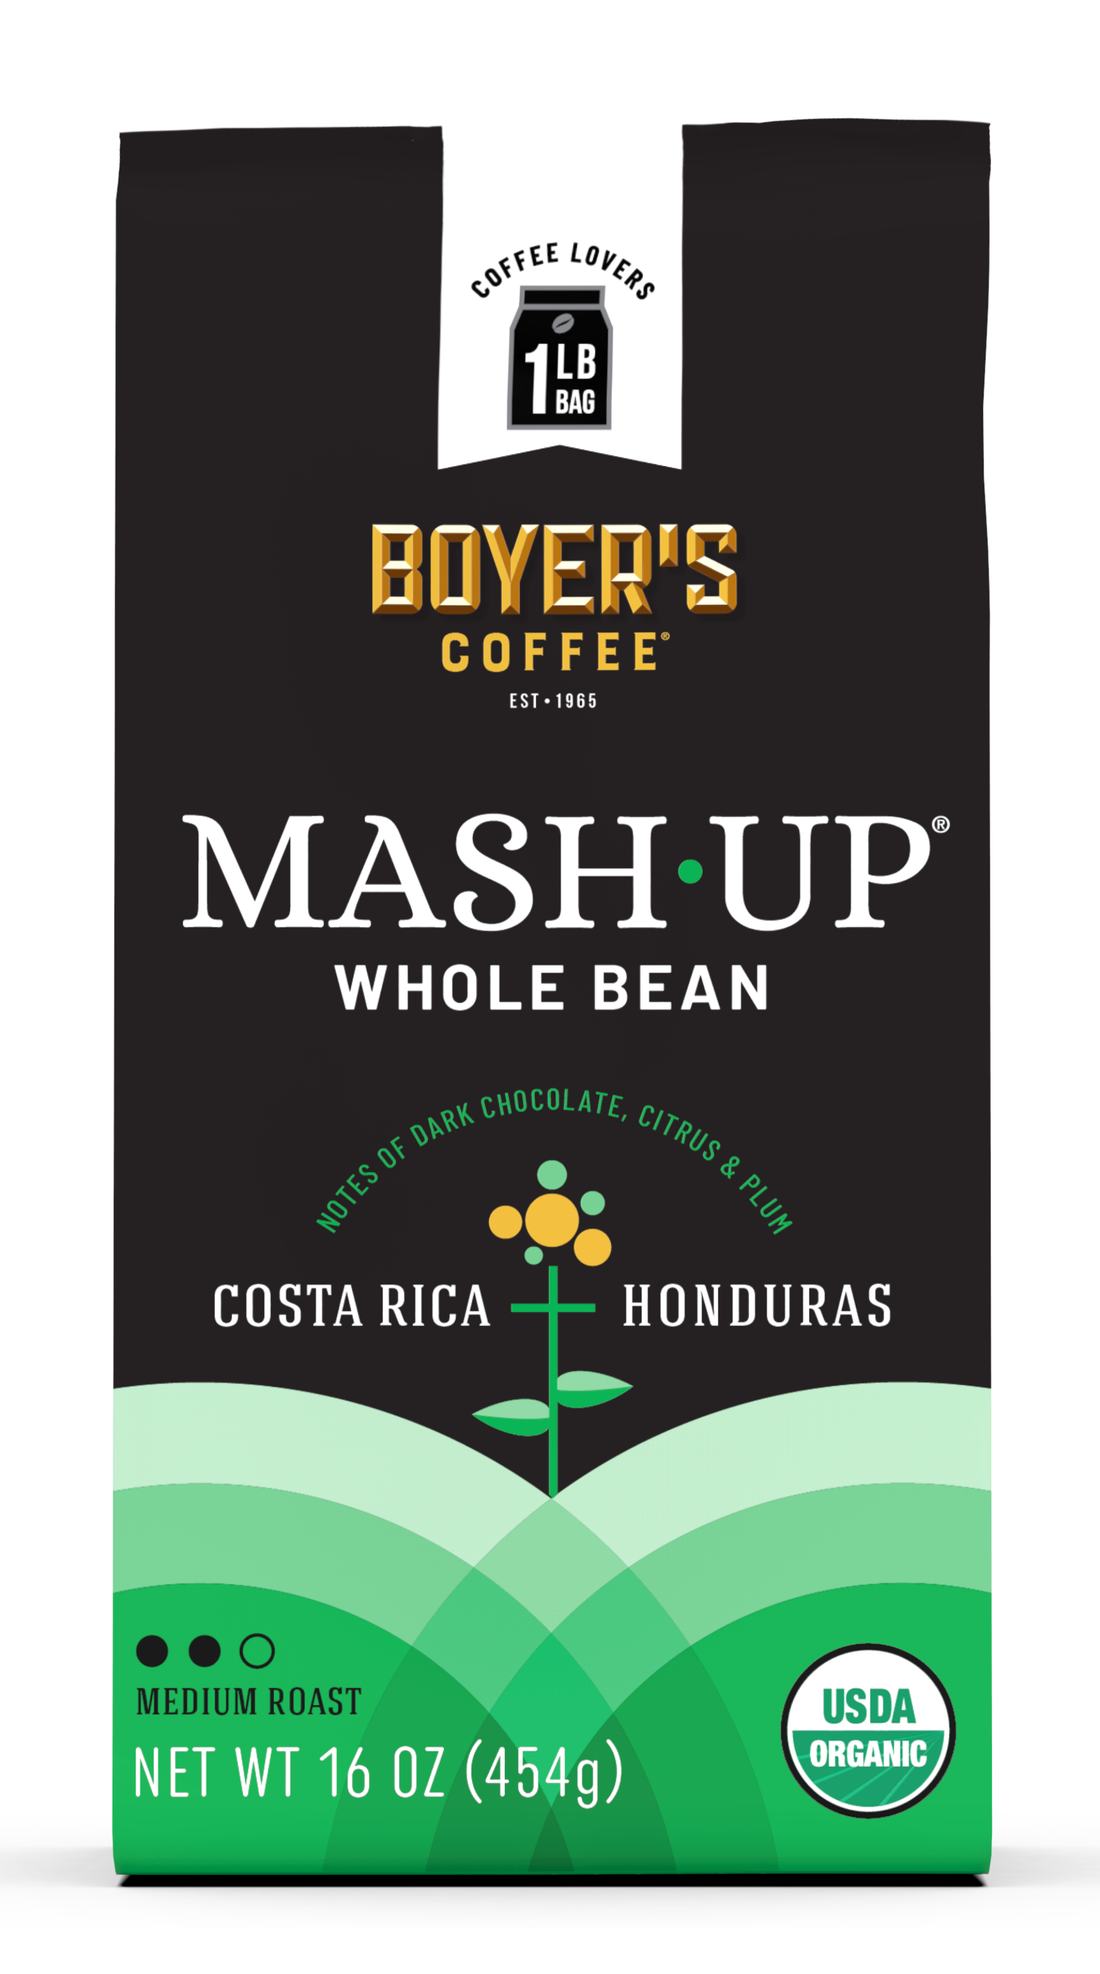 Costa Rica + Honduras Mash-Up Whole Bean, 16oz